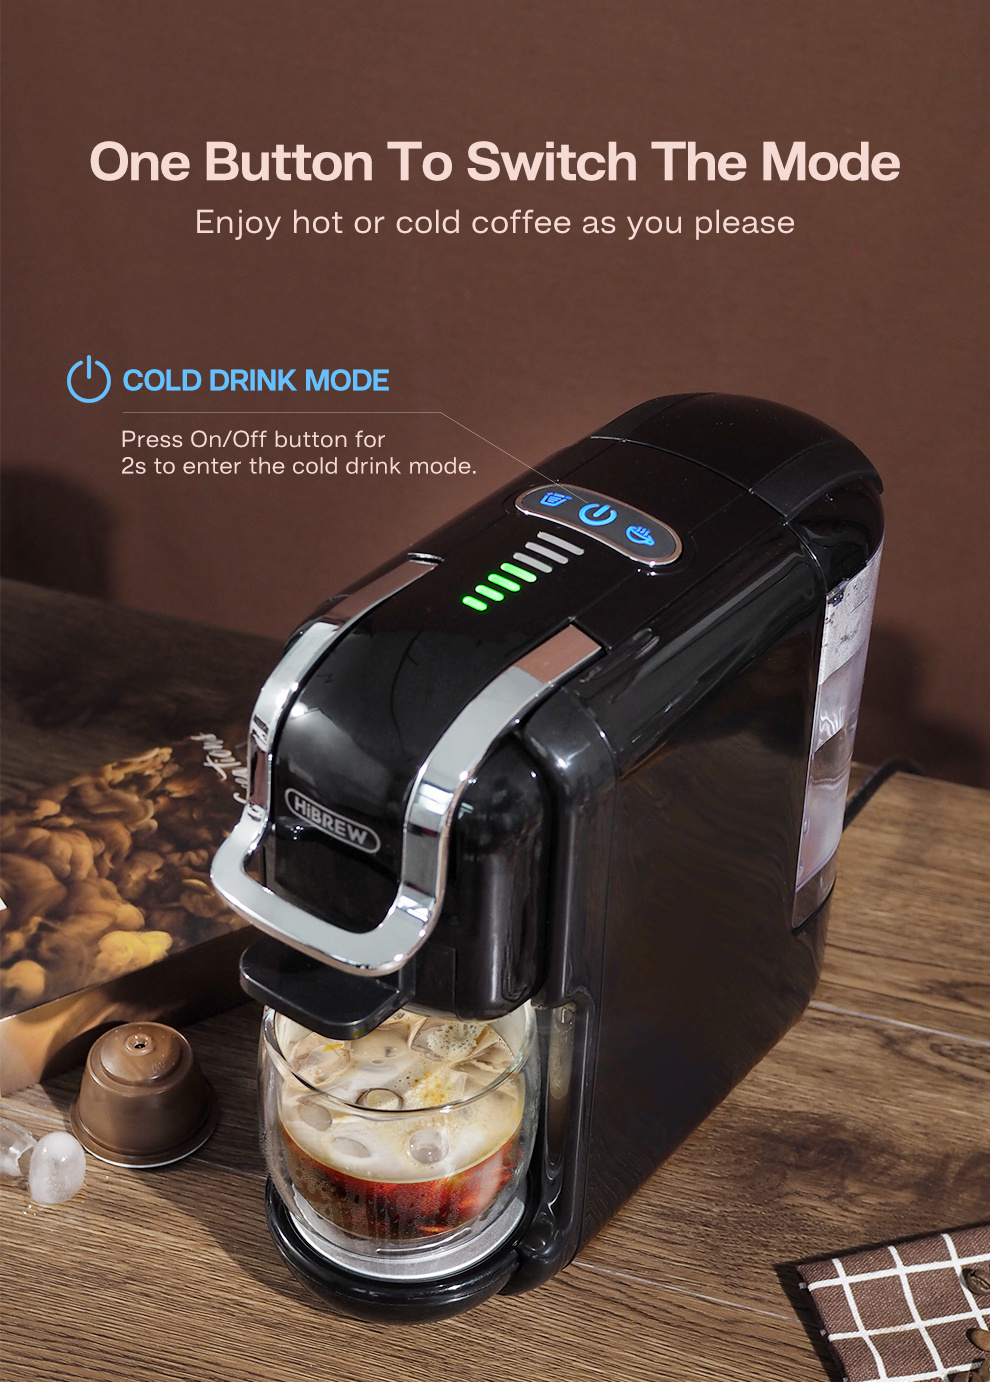 Despídete de las cápsulas Nespresso y del calor con esta cafetera que  prepara más de 15 bebidas frías